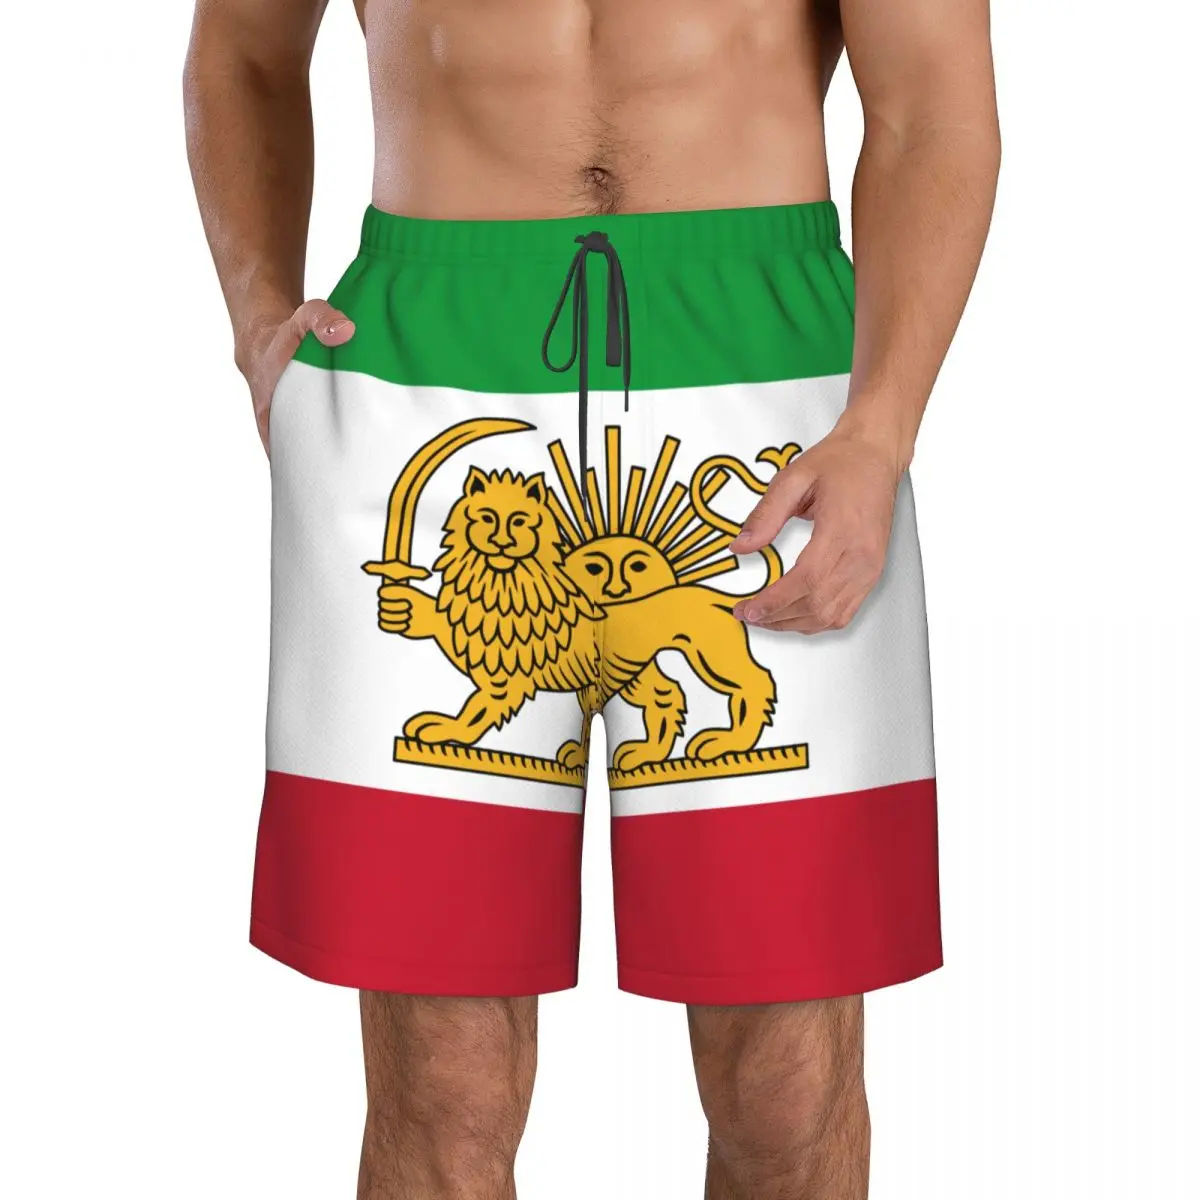 

Быстросохнущие мужские пляжные шорты для мужчин, плавки, плавки, Шорты для плавания, пляжная одежда, вариант флага Ирана с эмблемой льва и солнца